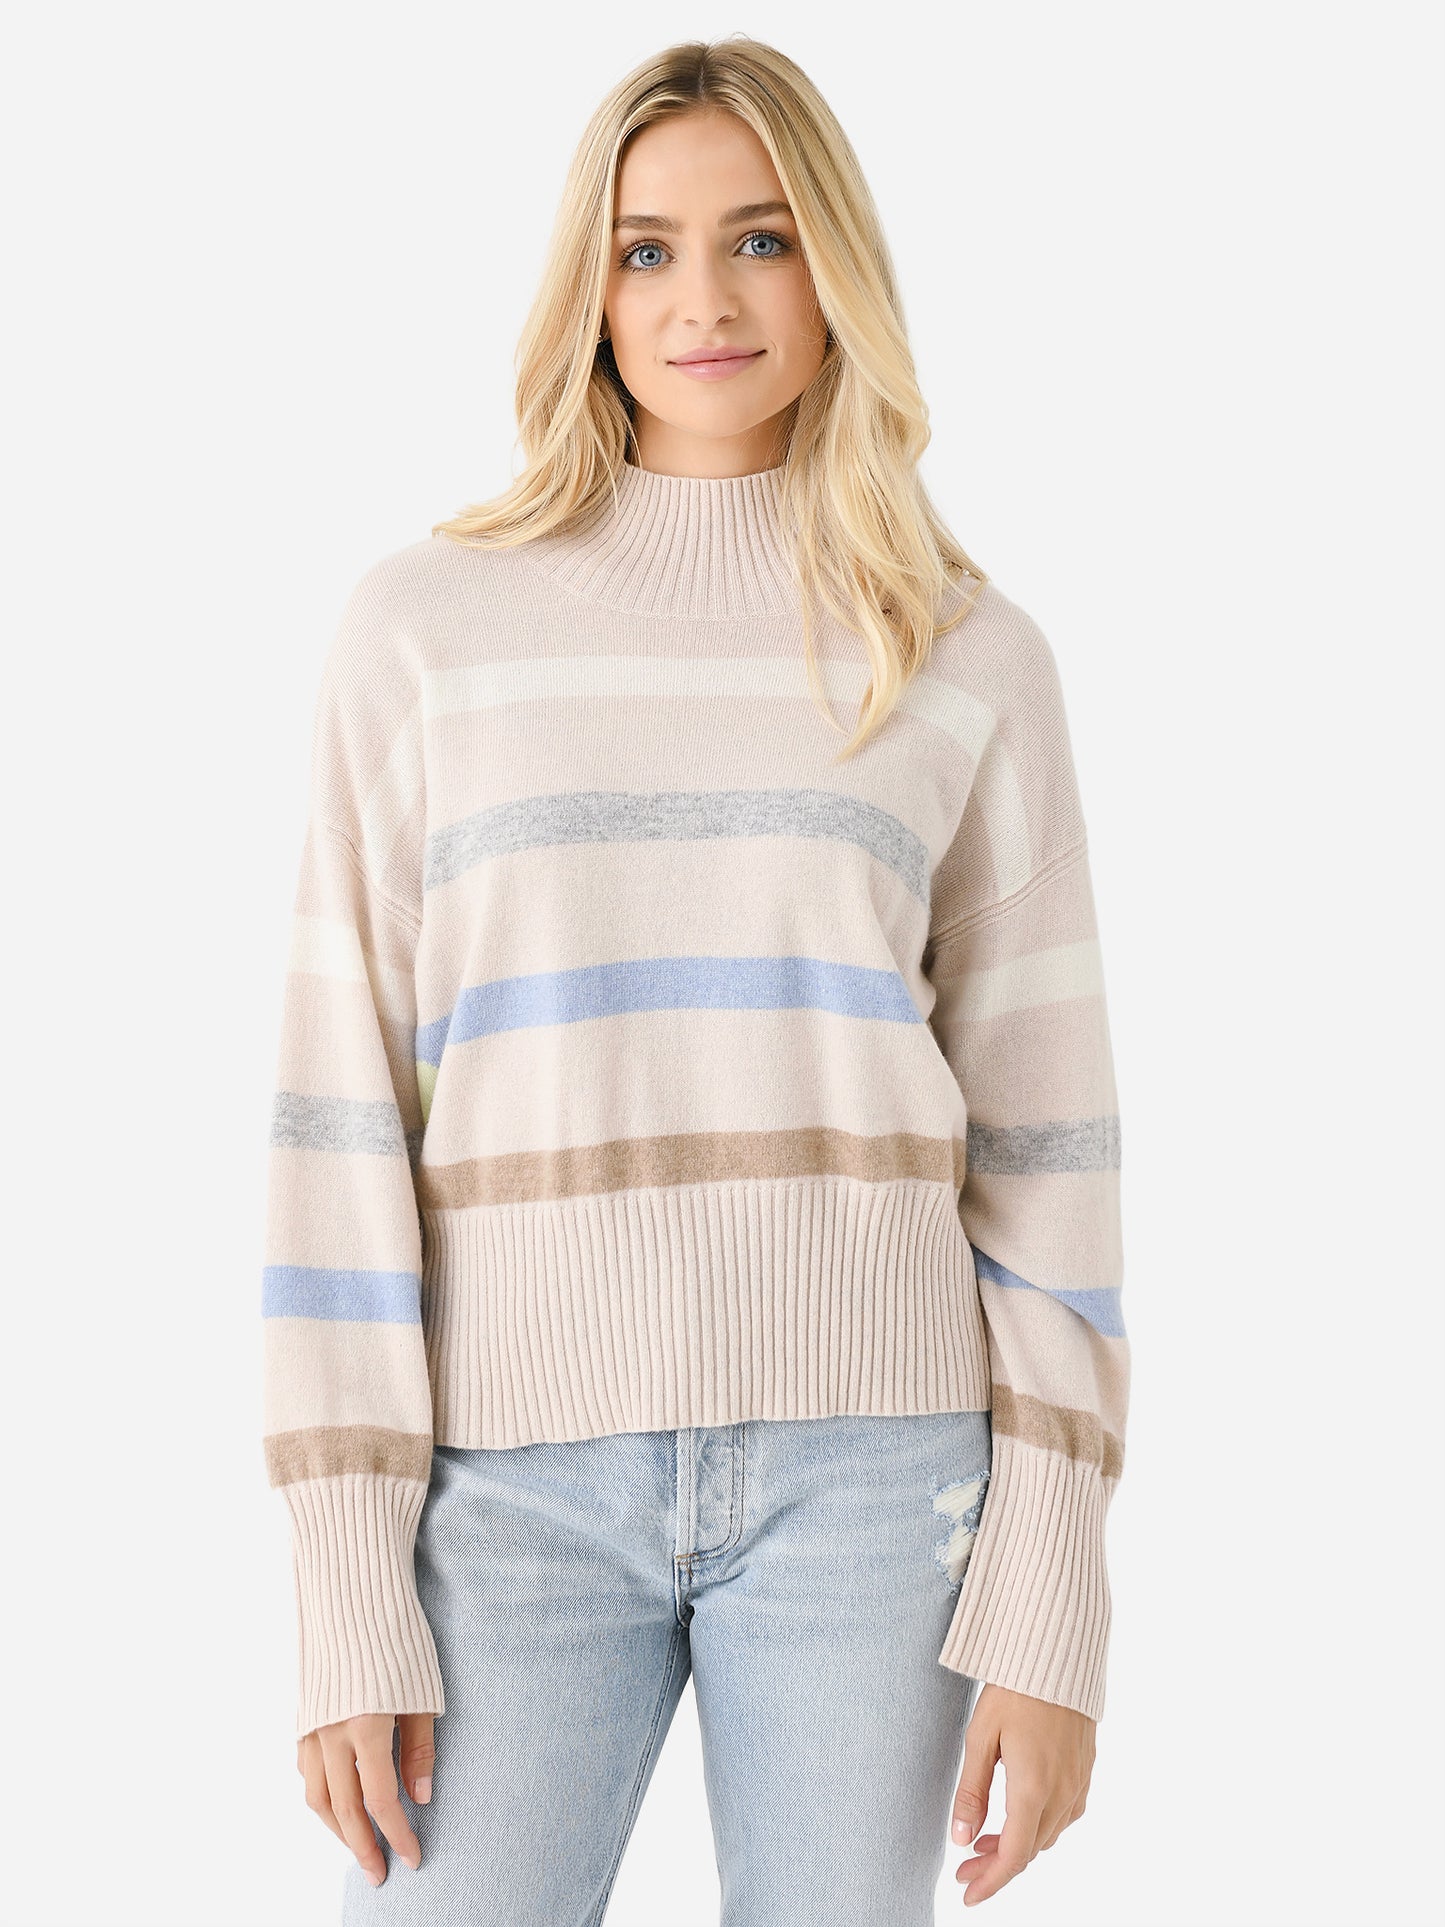 Kerri Rosenthal Women's New Marlow Mock Neck Striped Sweater